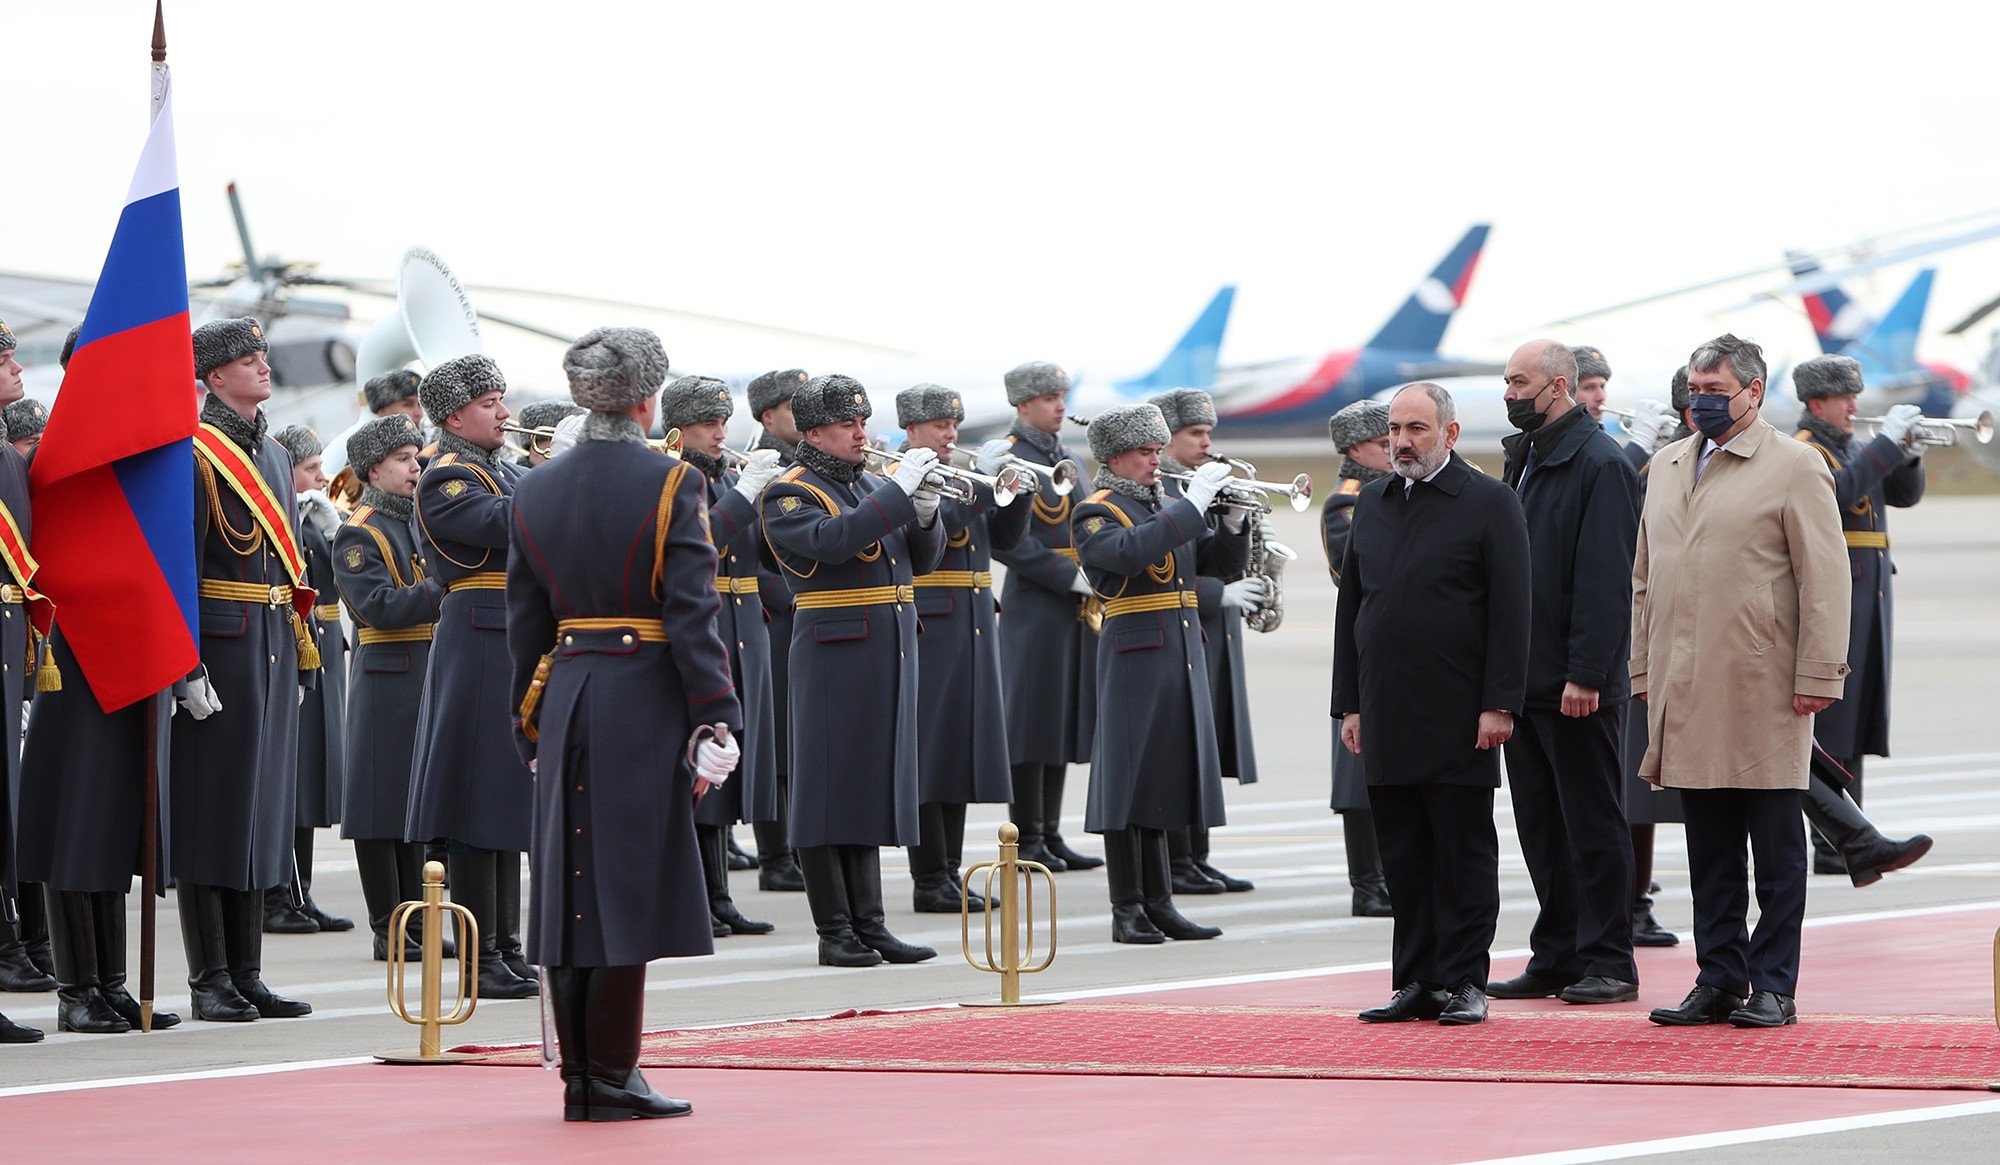 Նիկոլ Փաշինյանը պաշտոնական այցով ժամանել է ՌԴ